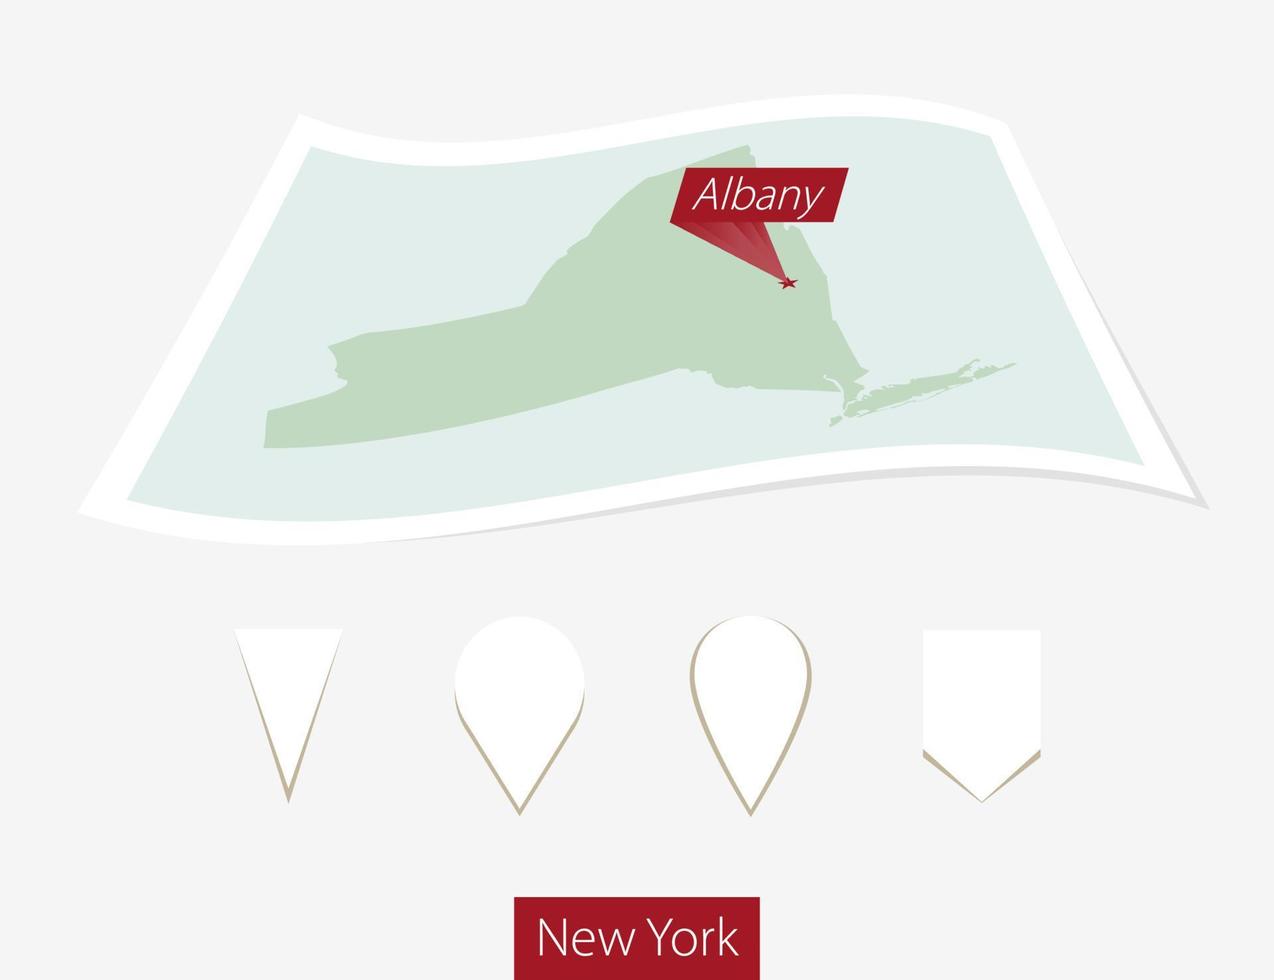 gebogen Papier Karte von Neu York Zustand mit Hauptstadt Albany auf grau Hintergrund. vier anders Karte Stift Satz. vektor